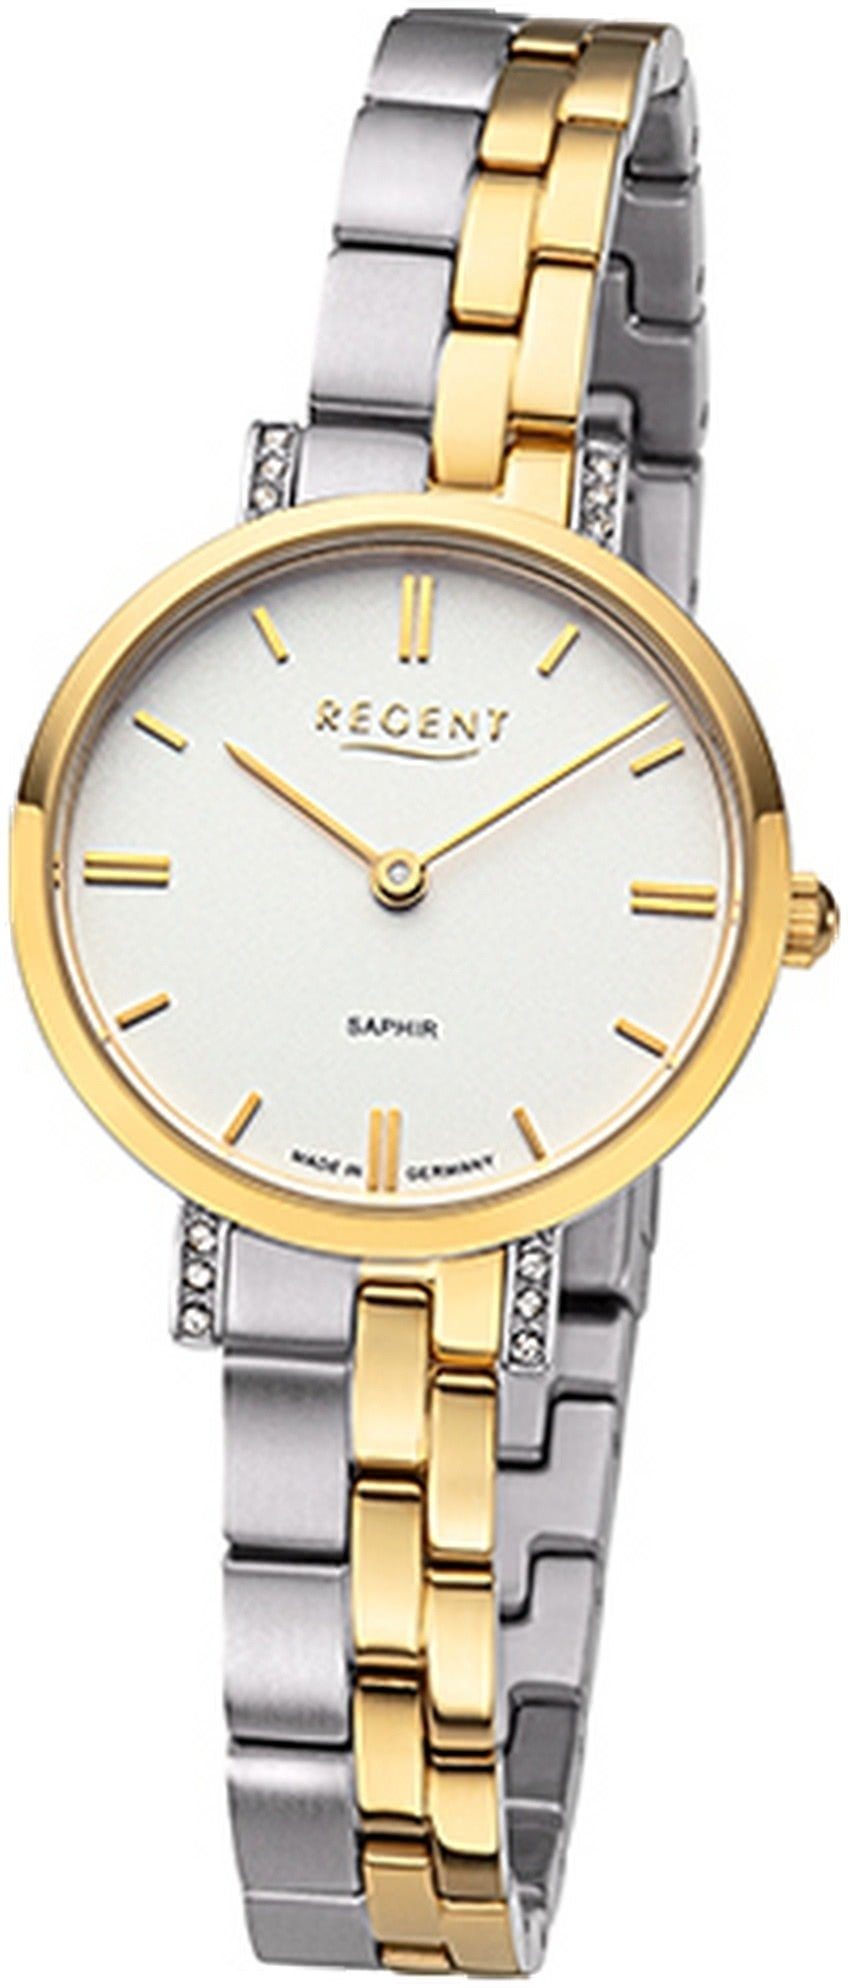 Regent Quarzuhr Regent Damen Armbanduhr Analog, Damenuhr Metallbandarmband silber, gold, rundes Gehäuse, klein (28mm) | Quarzuhren